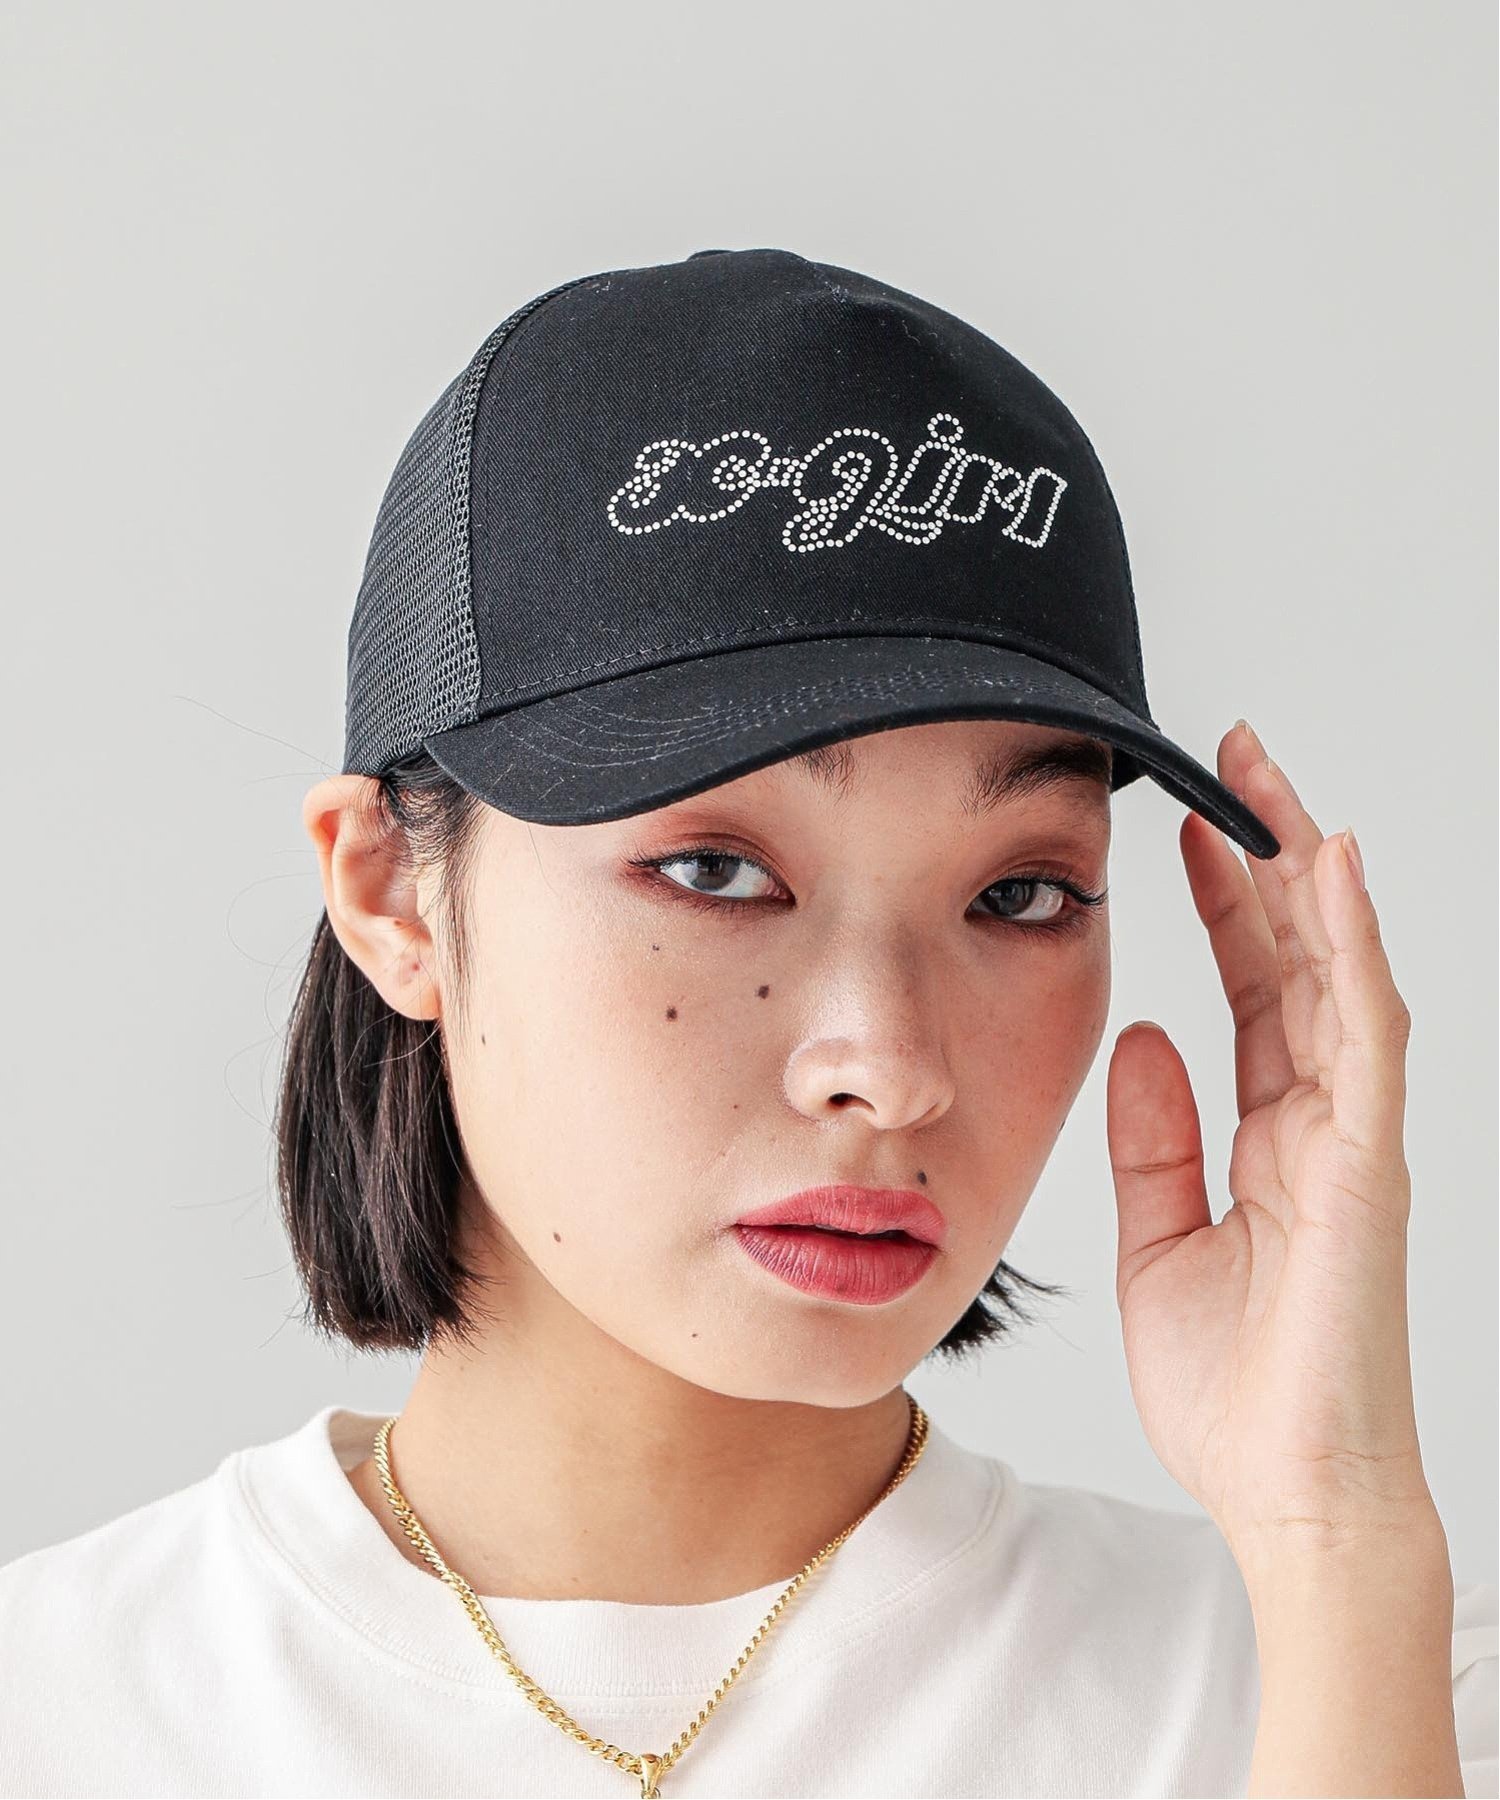 楽天Rakuten FashionX-girl RHINESTONE LOGO TRUCKER CAP キャップ X-girl エックスガール 帽子 キャップ ブラック ホワイト【送料無料】